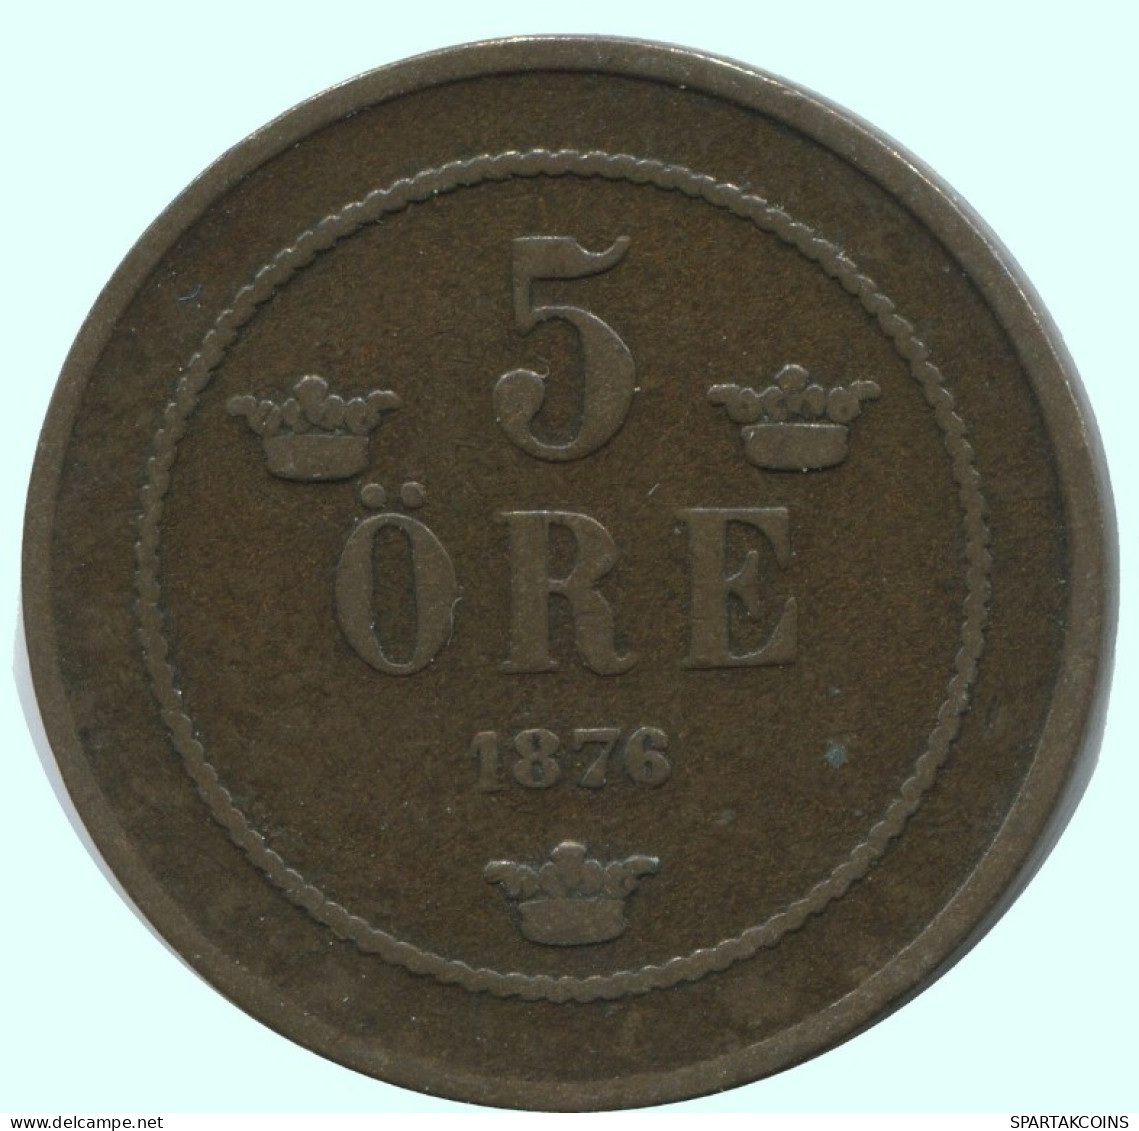 5 ORE 1876 SUECIA SWEDEN Moneda #AC580.2.E.A - Zweden